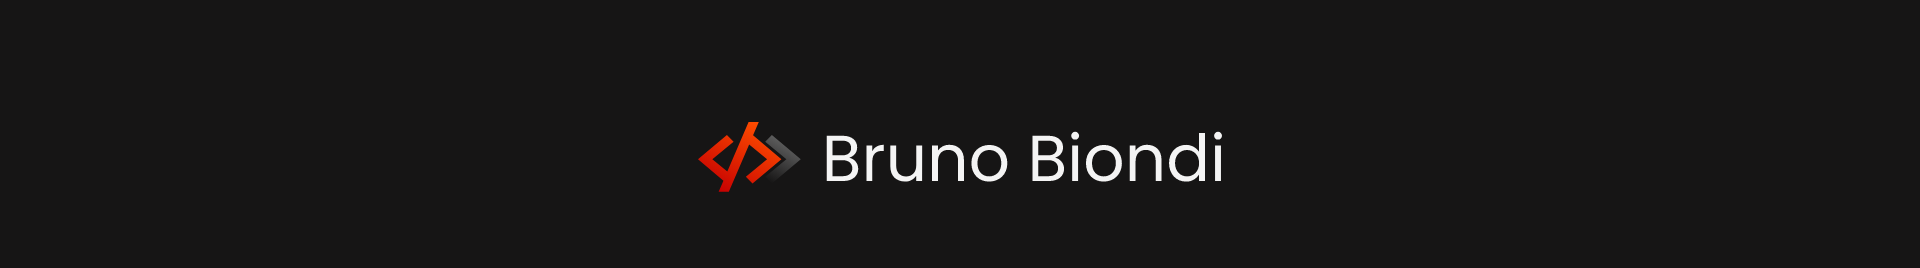 Bruno Biondi's profile banner